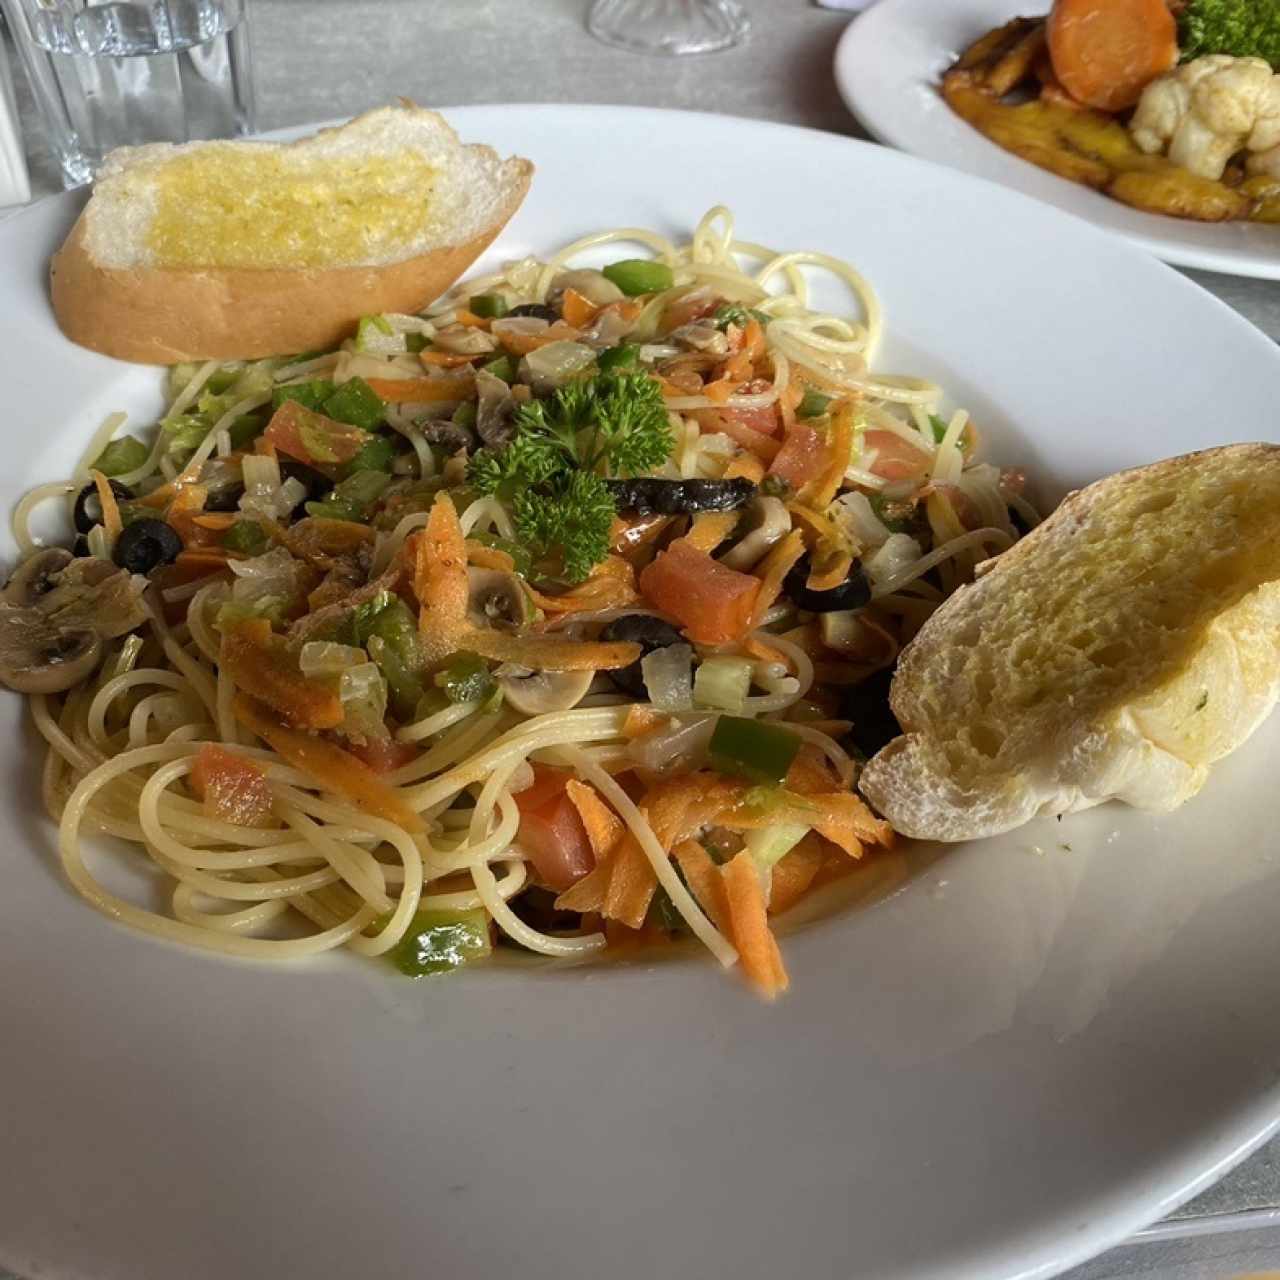 Spaguetti con vegetales (a la primavera)